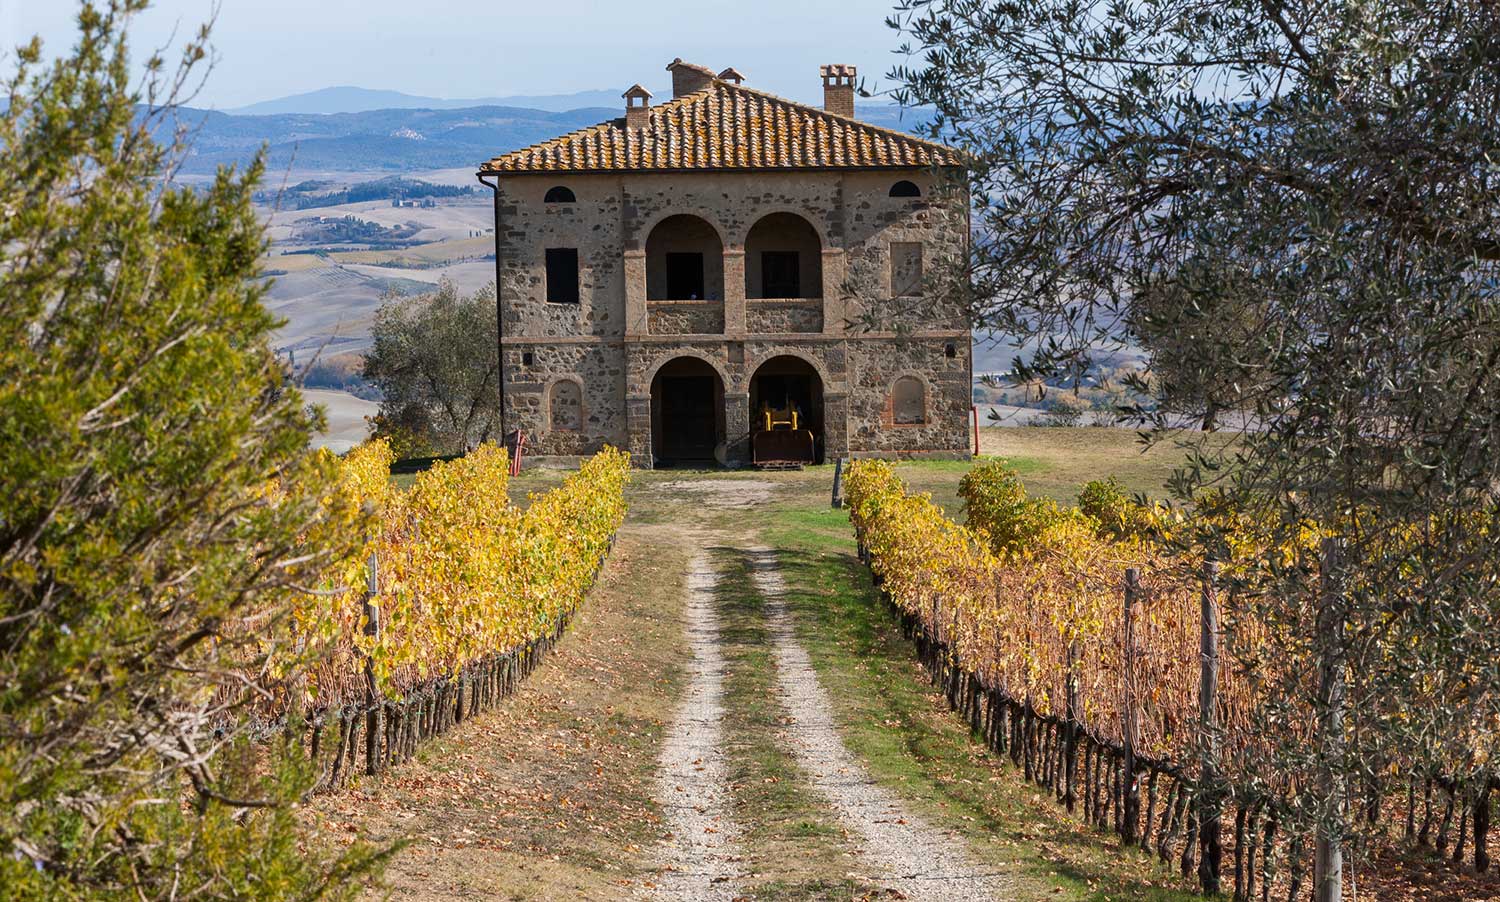 Haus eines Weinguts im Hintergrund, Auffahrt mit Weinfeldern